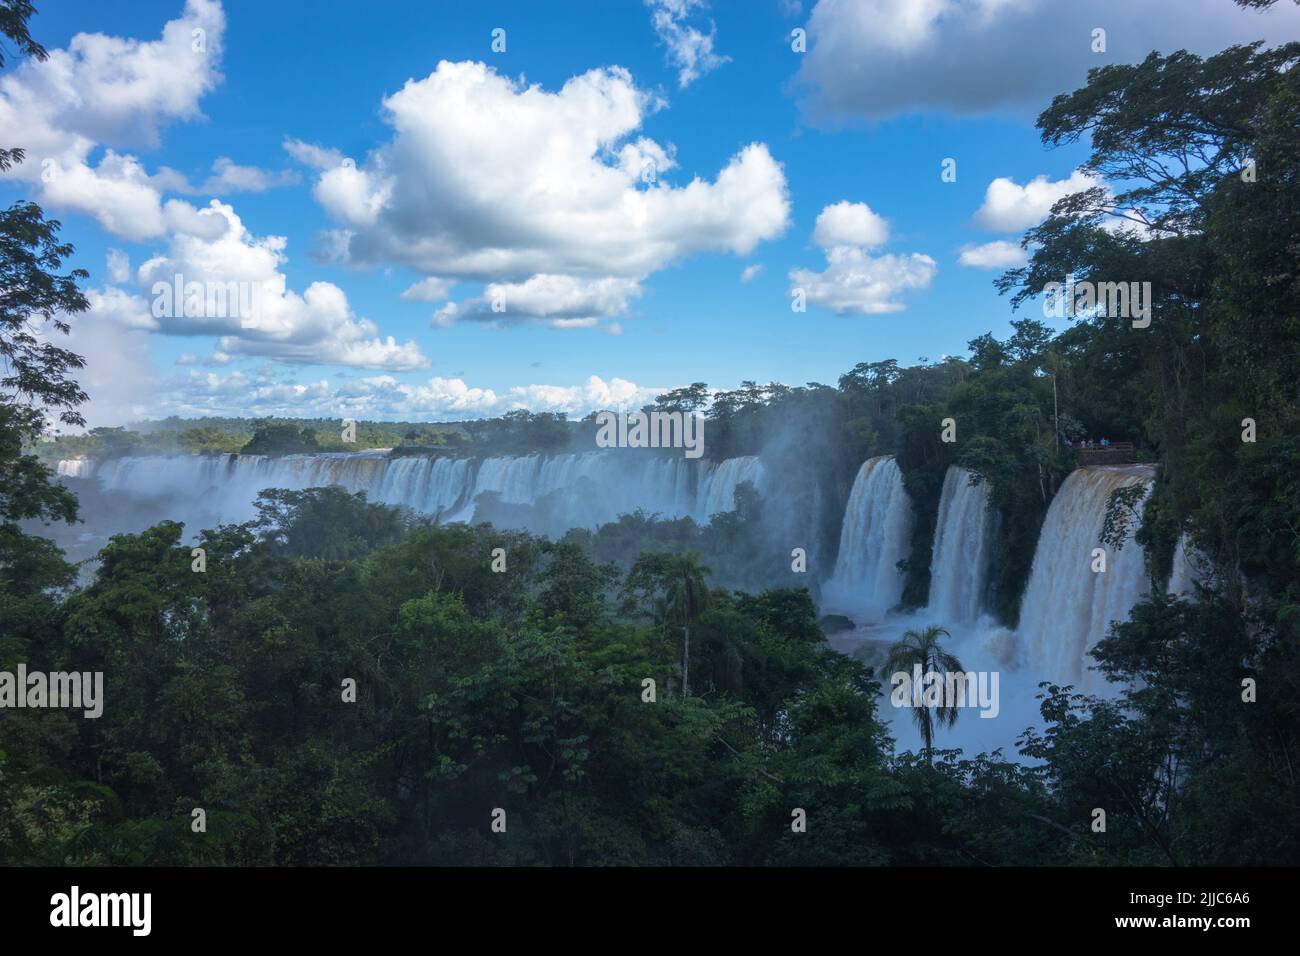 Vue panoramique immense depuis l'automne d'Iguazu, Catarata Argentine côté bleu ciel vert forêt eaux murmurées de la rivière Iguazu fort courant. Banque D'Images